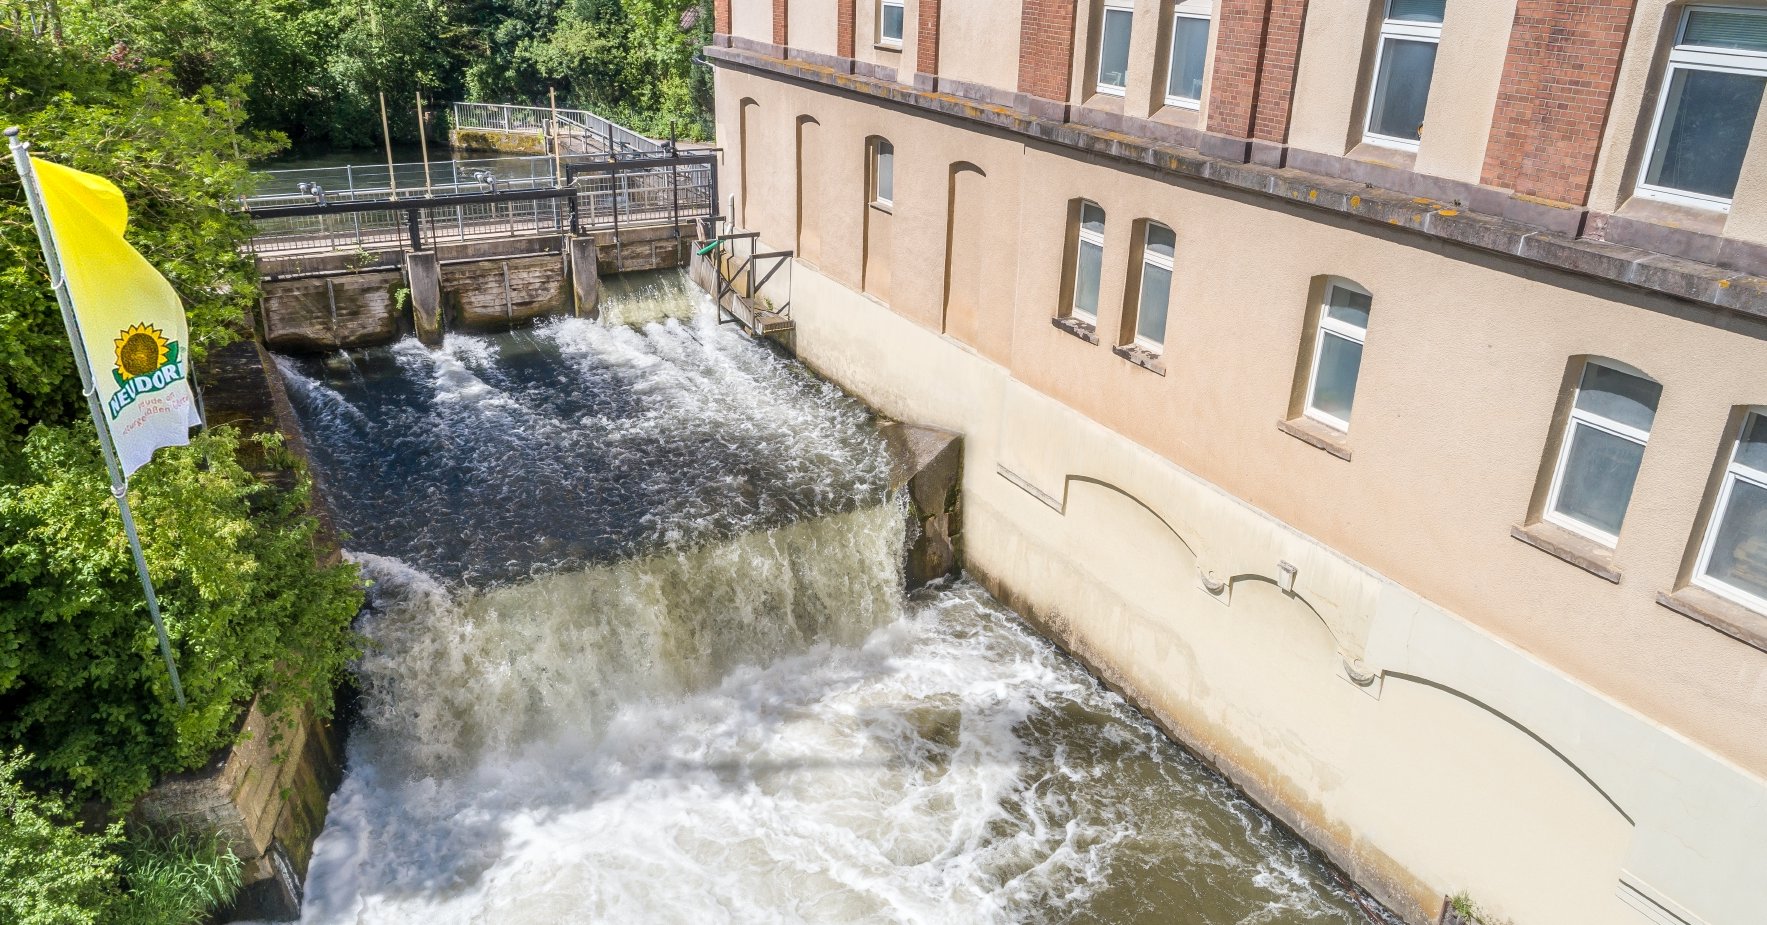 Producimos parte de nuestra energía de forma respetuosa con el medio ambiente gracias a la energía hidráulica del río Emmer